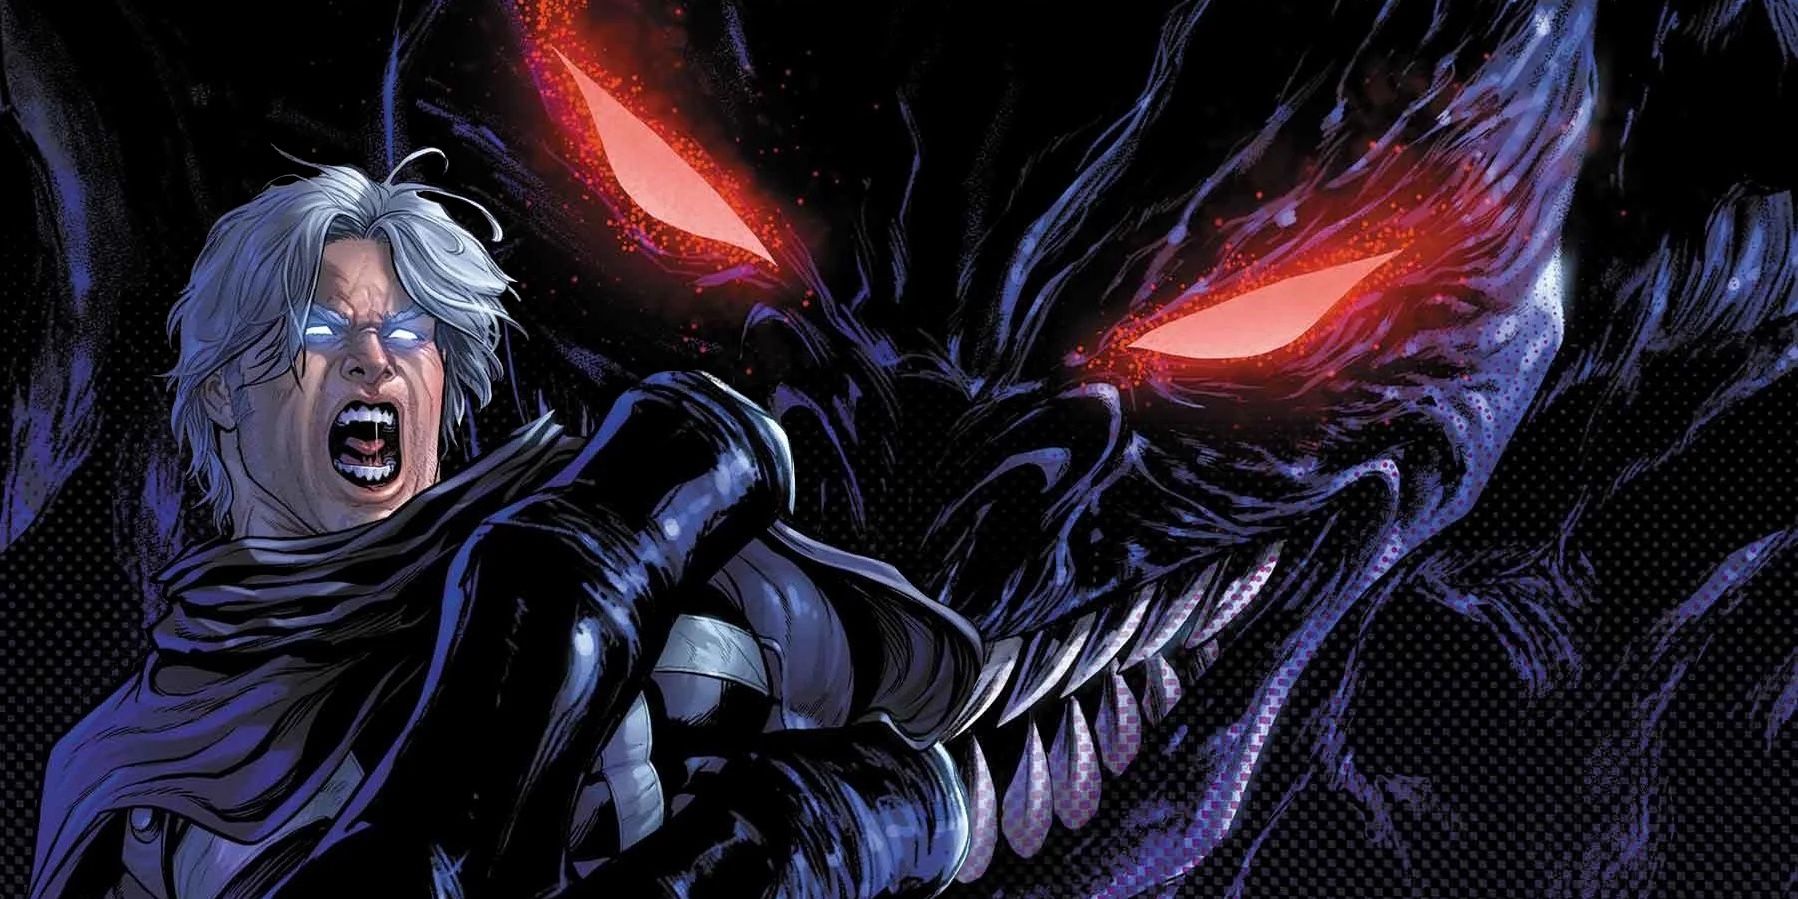 “Un rey de las sombras”: X-Men acaba de crear un nuevo e impactante nombre en clave e identidad para Magneto